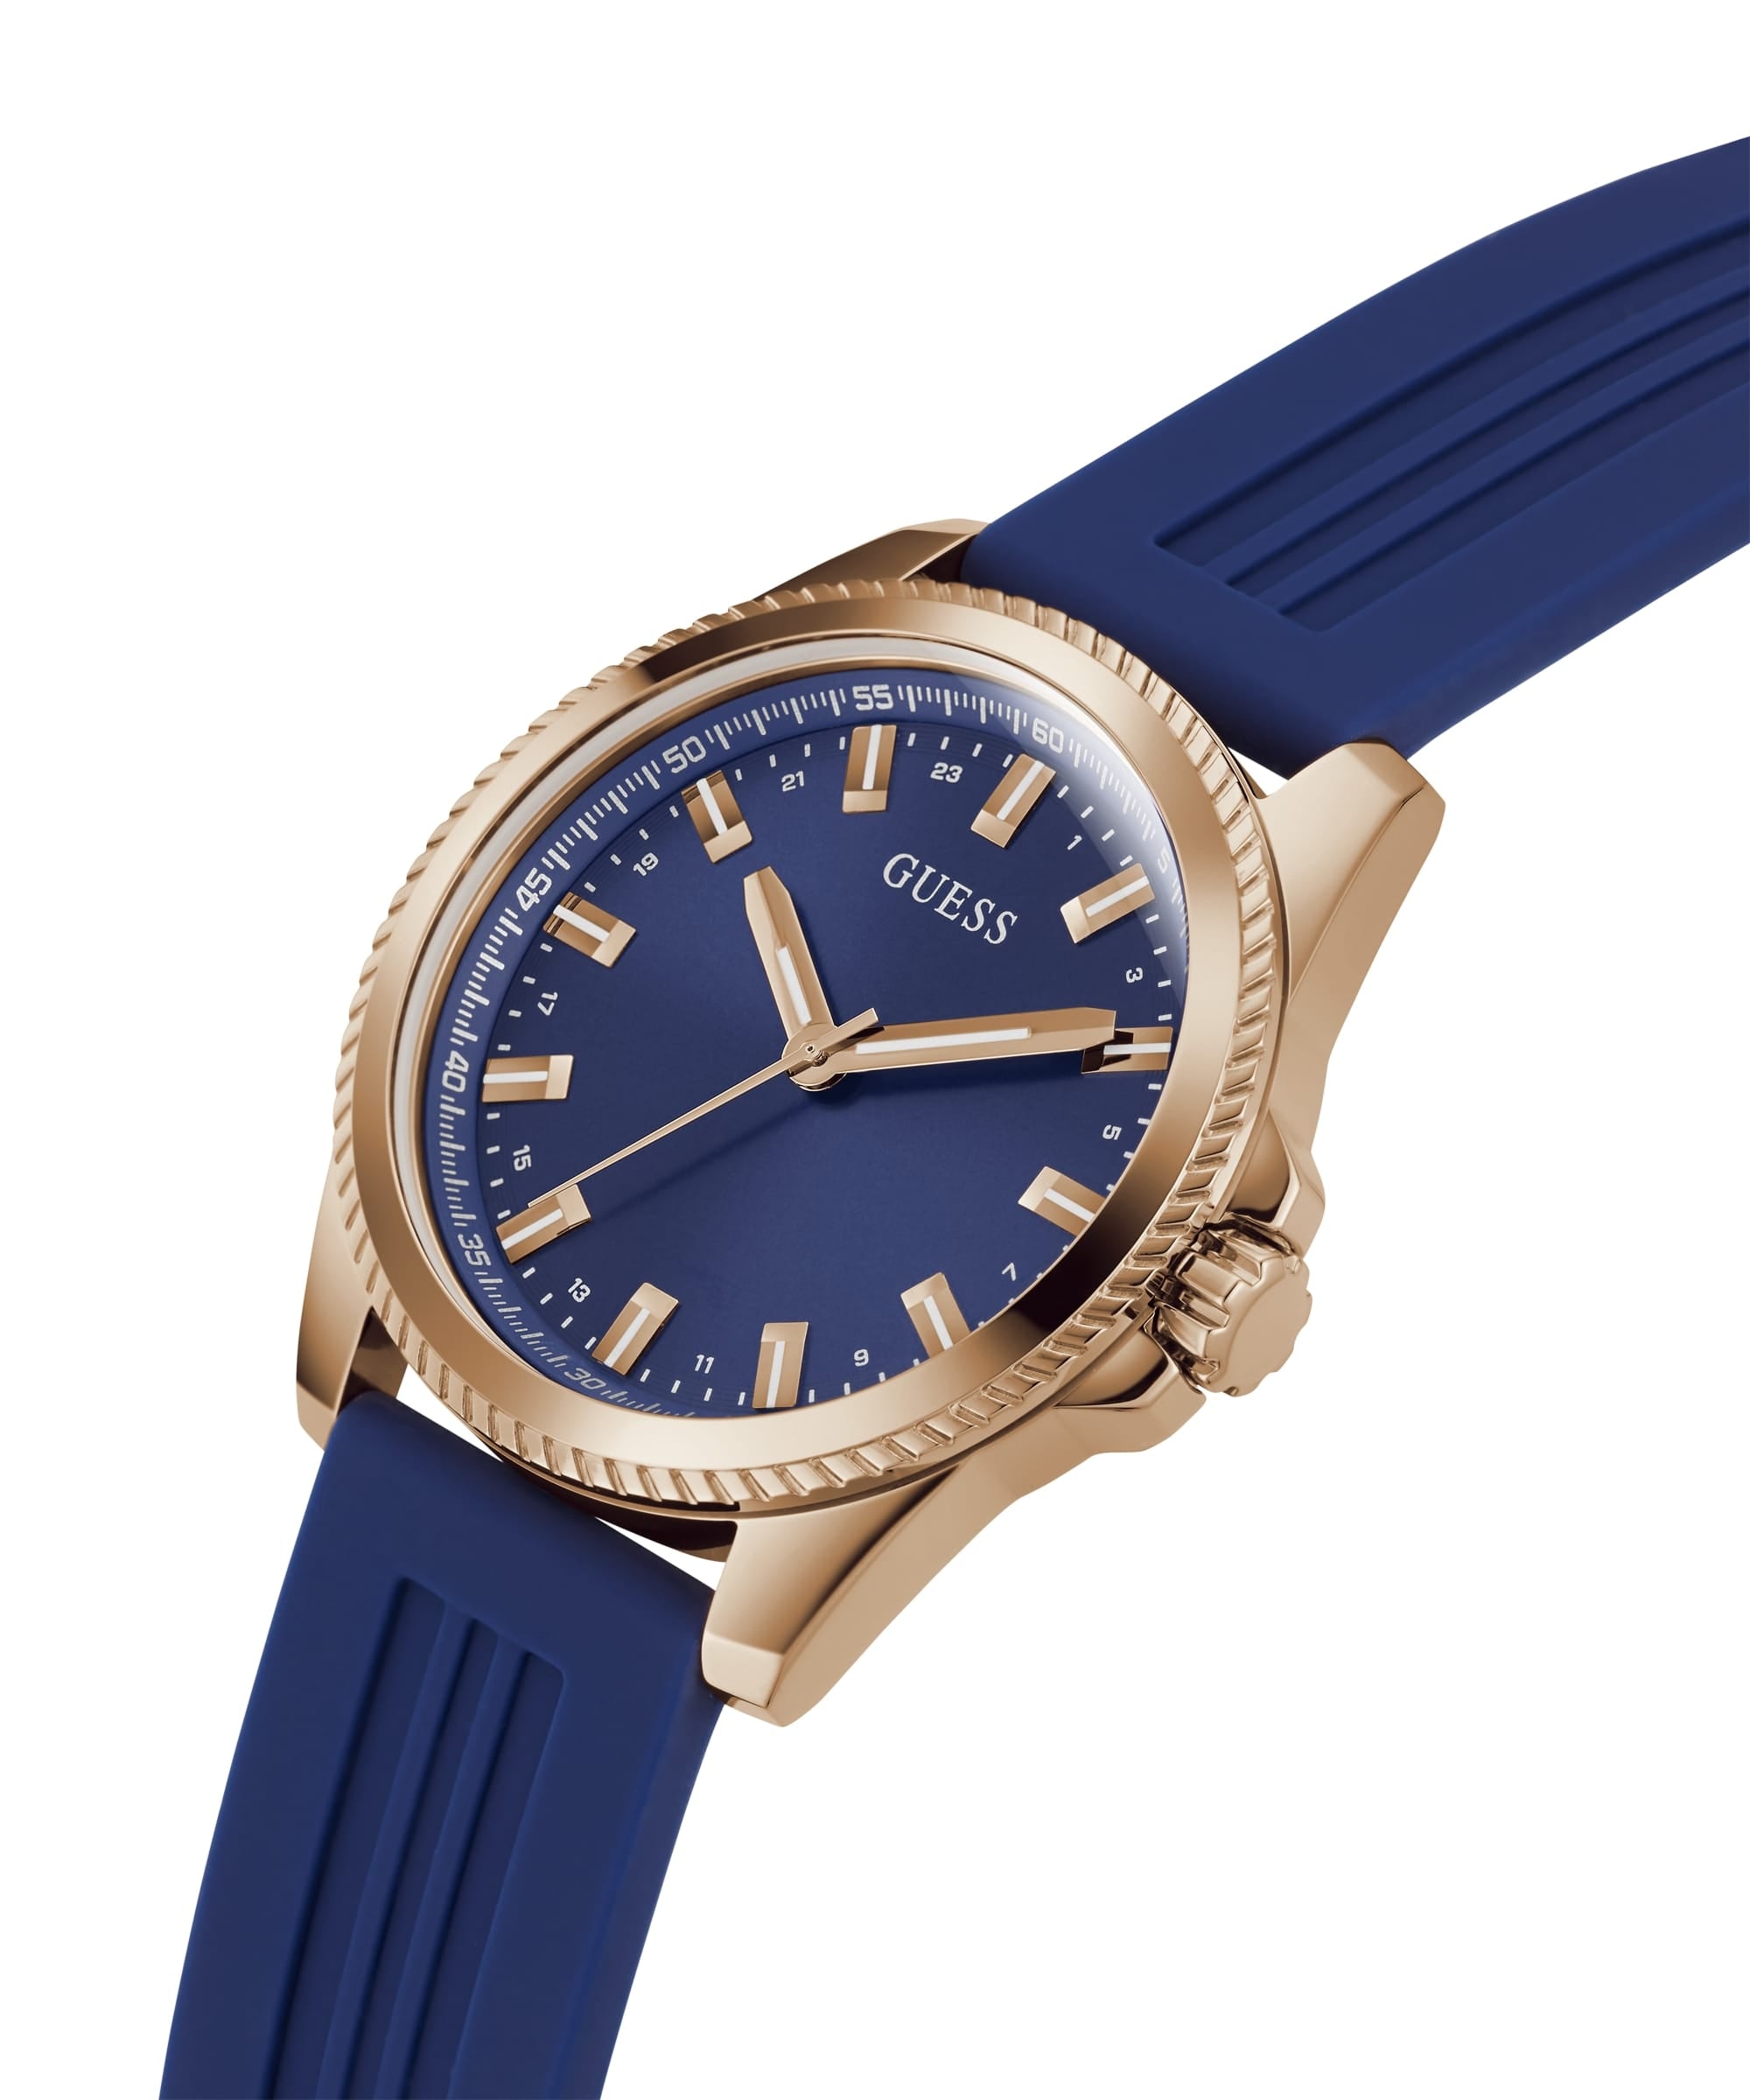 Dial Watches – Watch Blue - Guess GW0202 Phoenix Men Tonneau Multi-Function Just Case